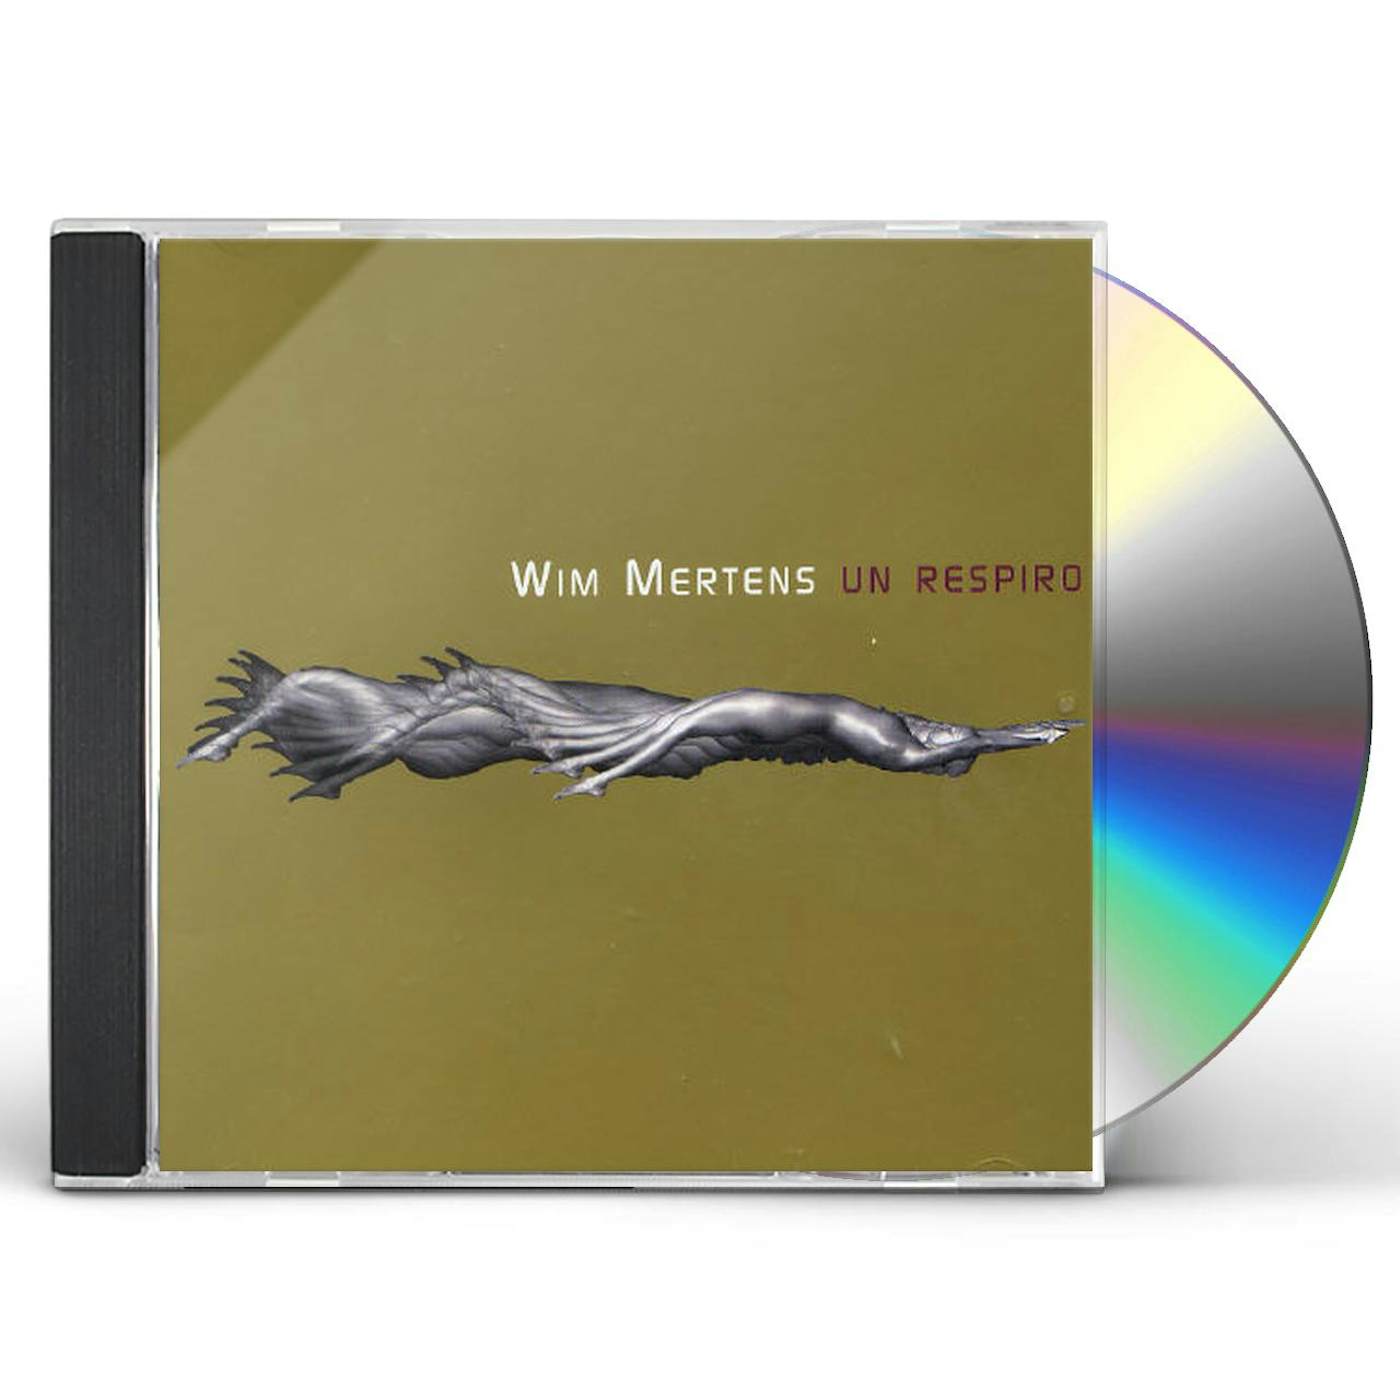 Wim Mertens UN RESPIRO CD